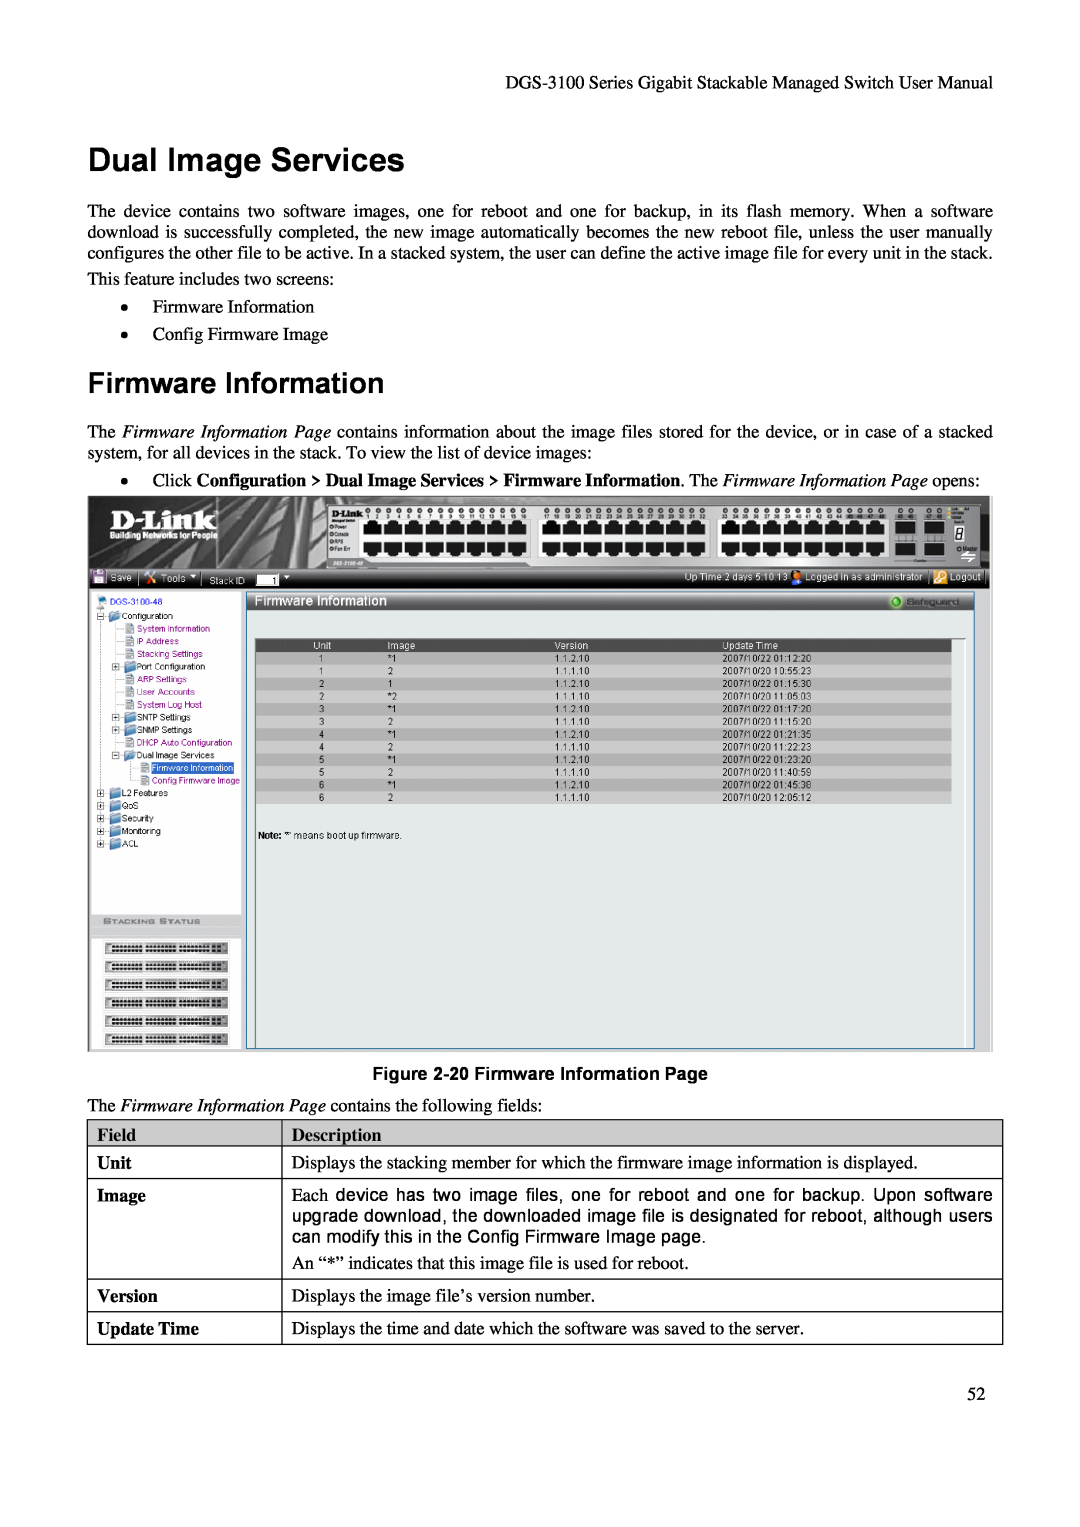 D-Link DGS-3100 Dual Image Services, 20 Firmware Information Page, Field Unit Image Version Update Time, Description 